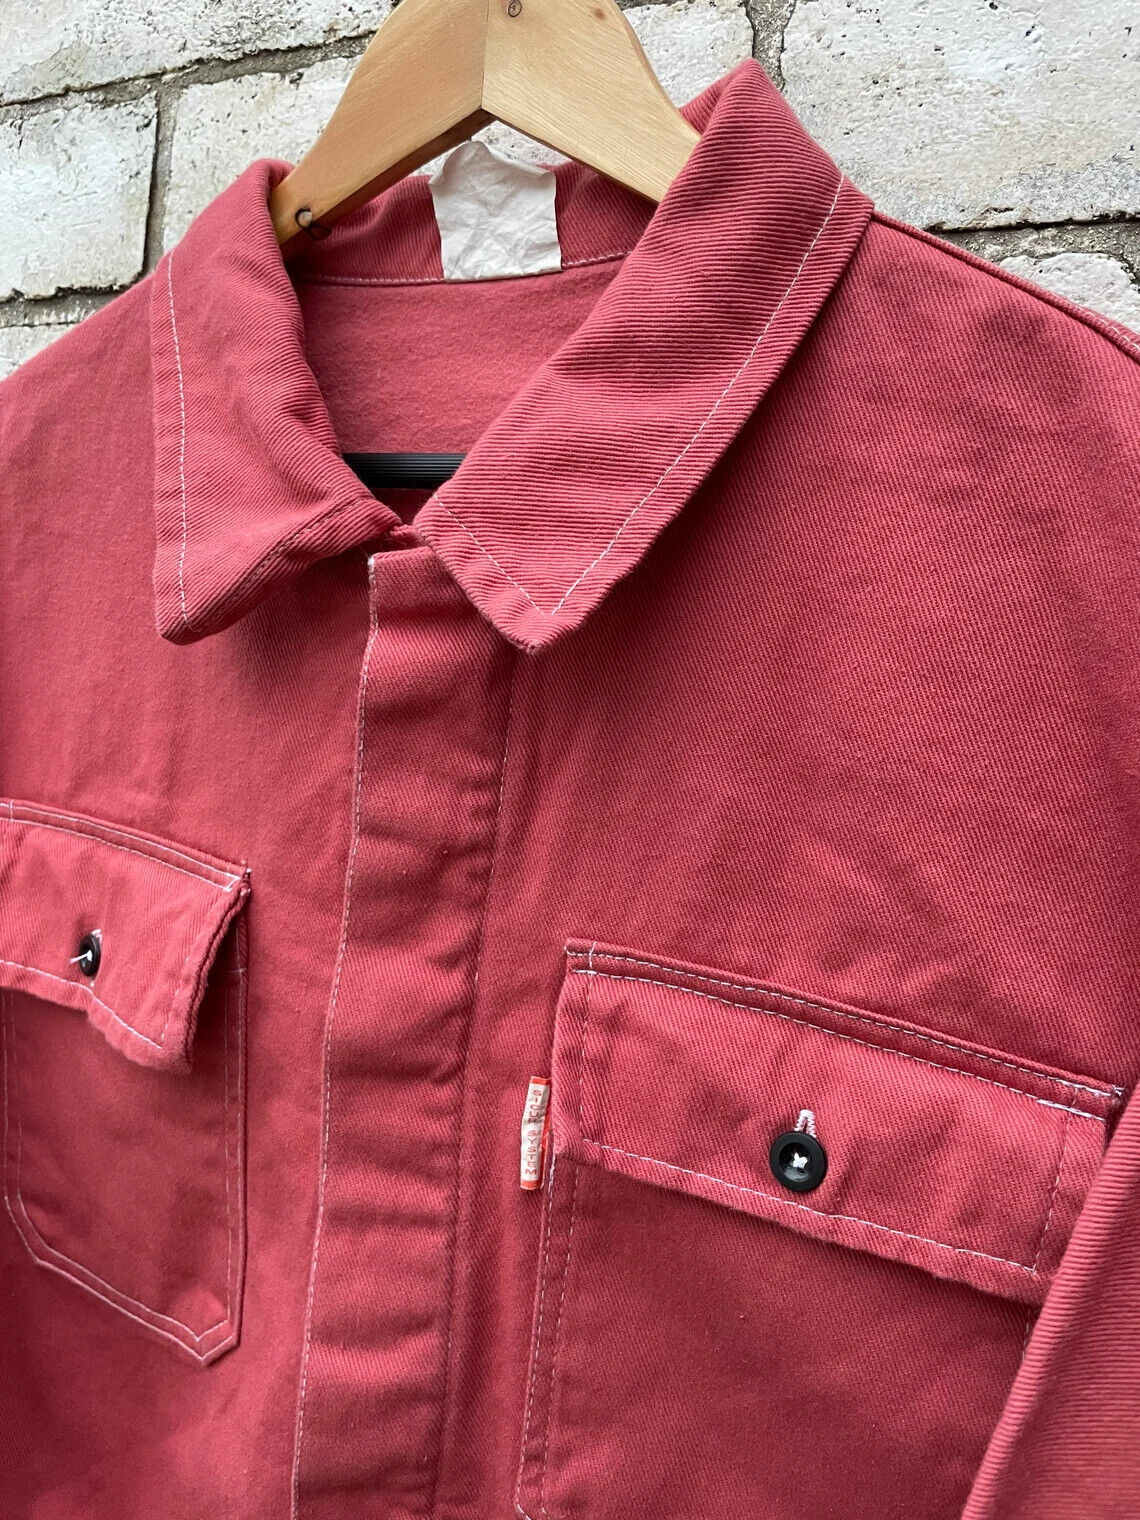 Vintage Chore Jacket Coral Pink